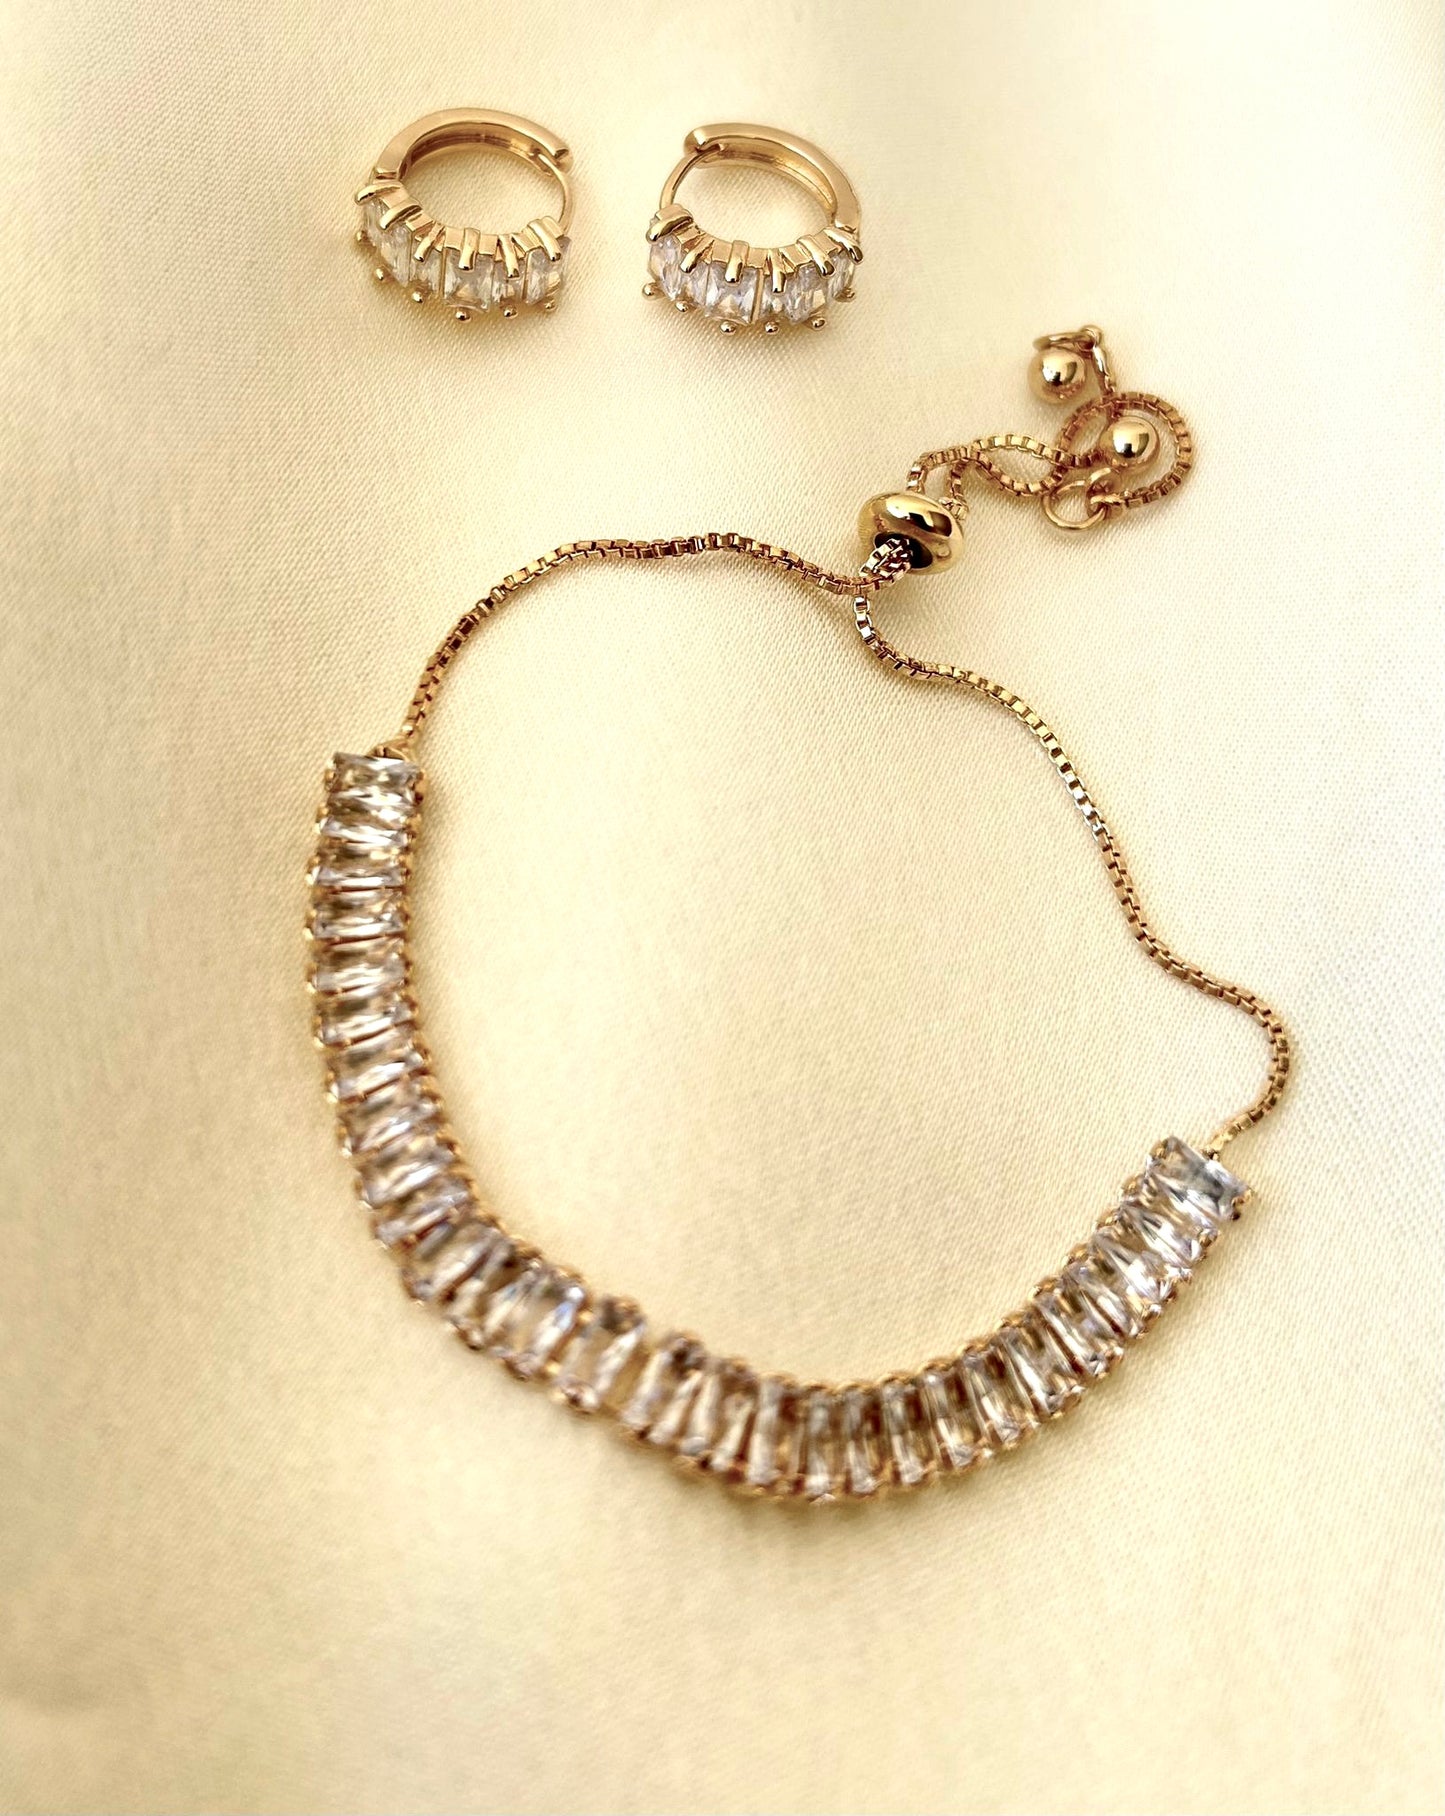 Lyla Bracelet and Earrings Set